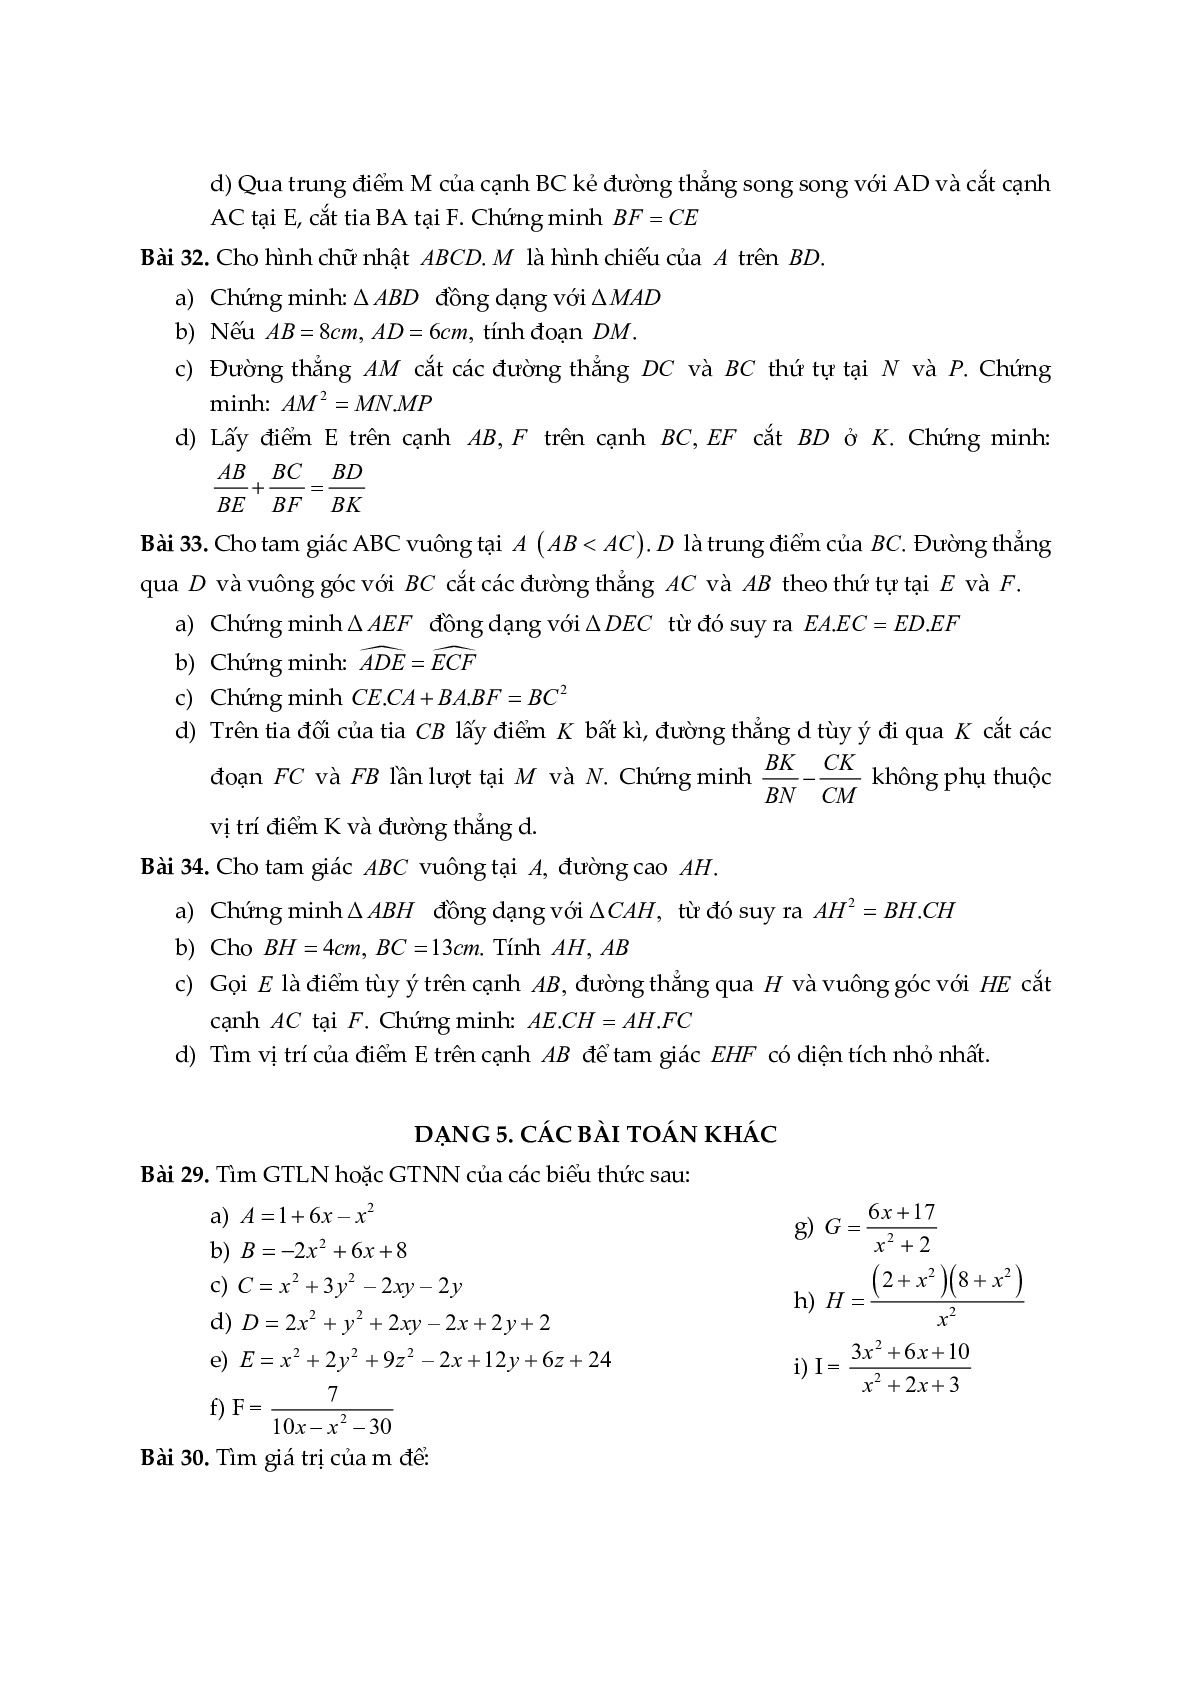 Đề cương ôn tập học kỳ II môn toán 8 năm học 2018-2019 Phòng GDĐT Cầu Giấy - Hà Nội (trang 5)